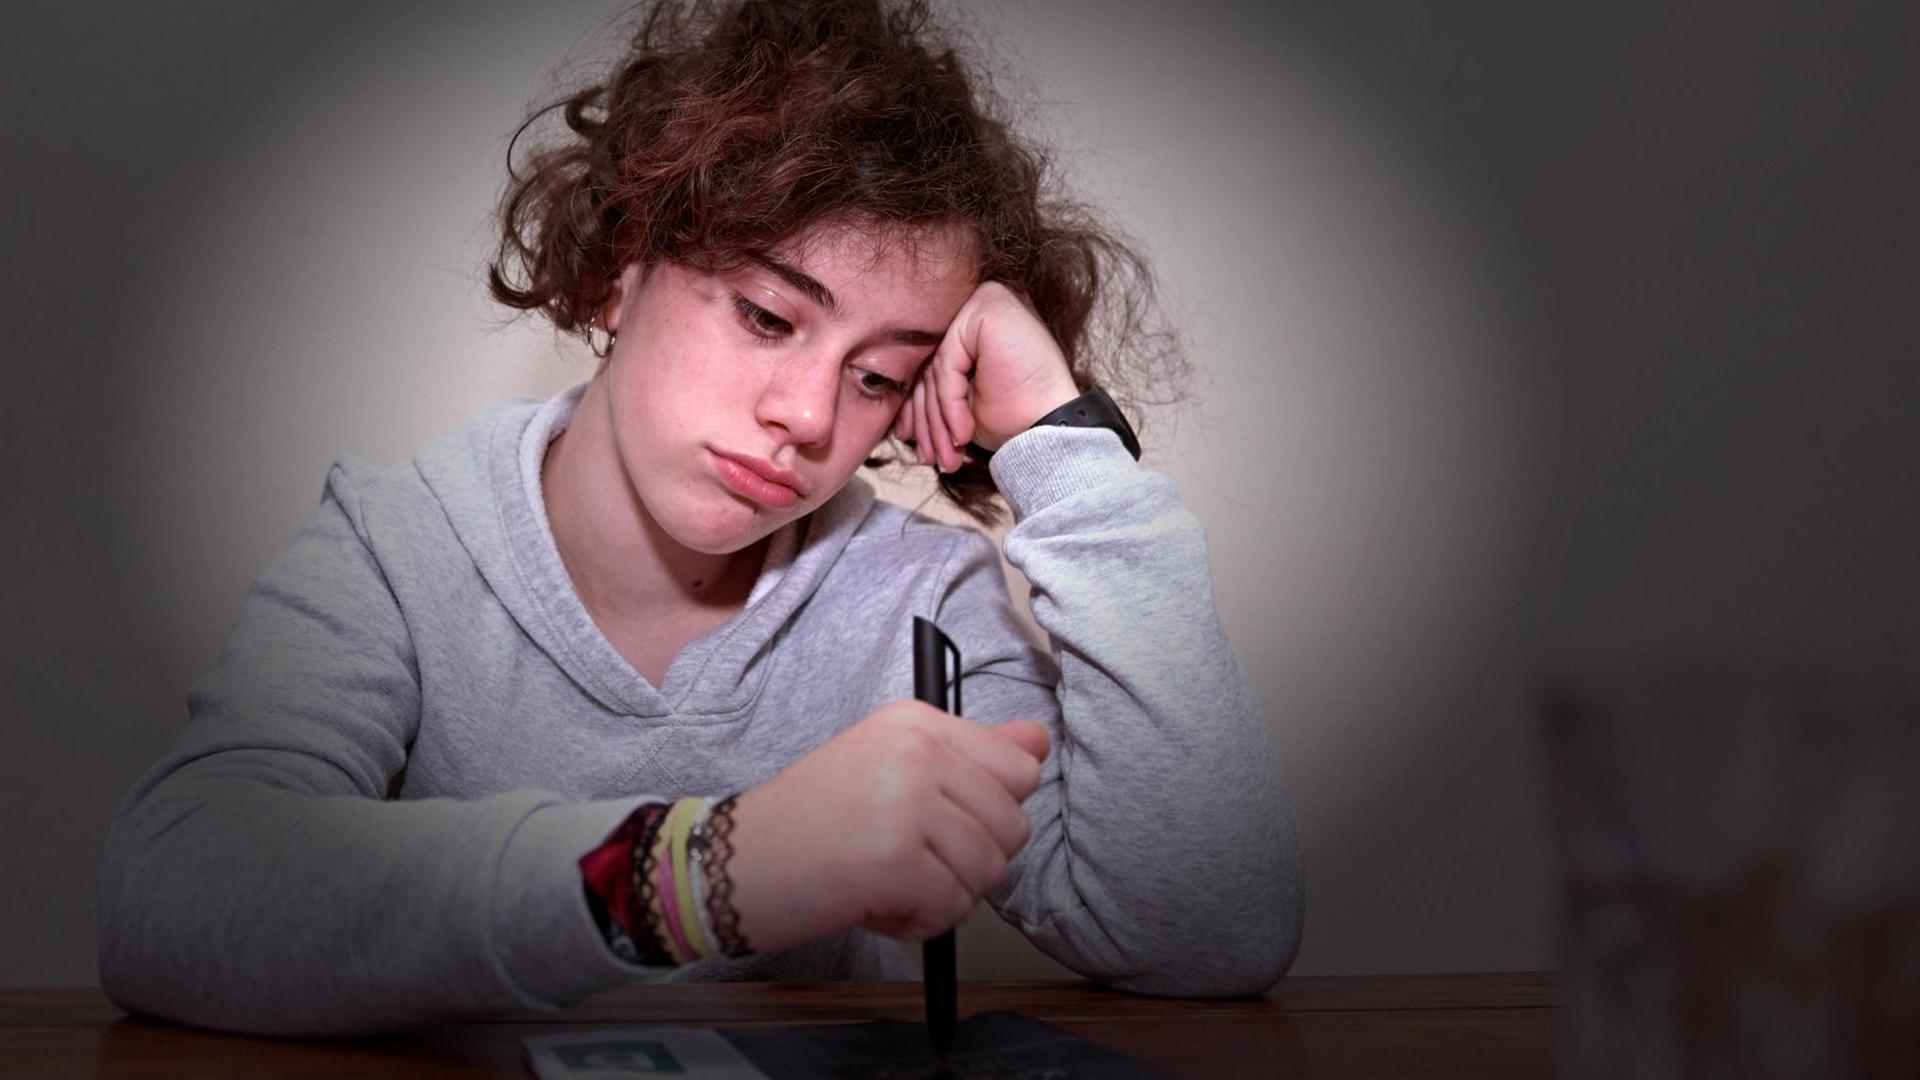 Unterricht von Zuhause in Corona-Zeiten: Ein Schulkind sitzt am Tisch, guckt traurig-gelangweilt und stützt den Kopf in die Hand (Symbolbild)